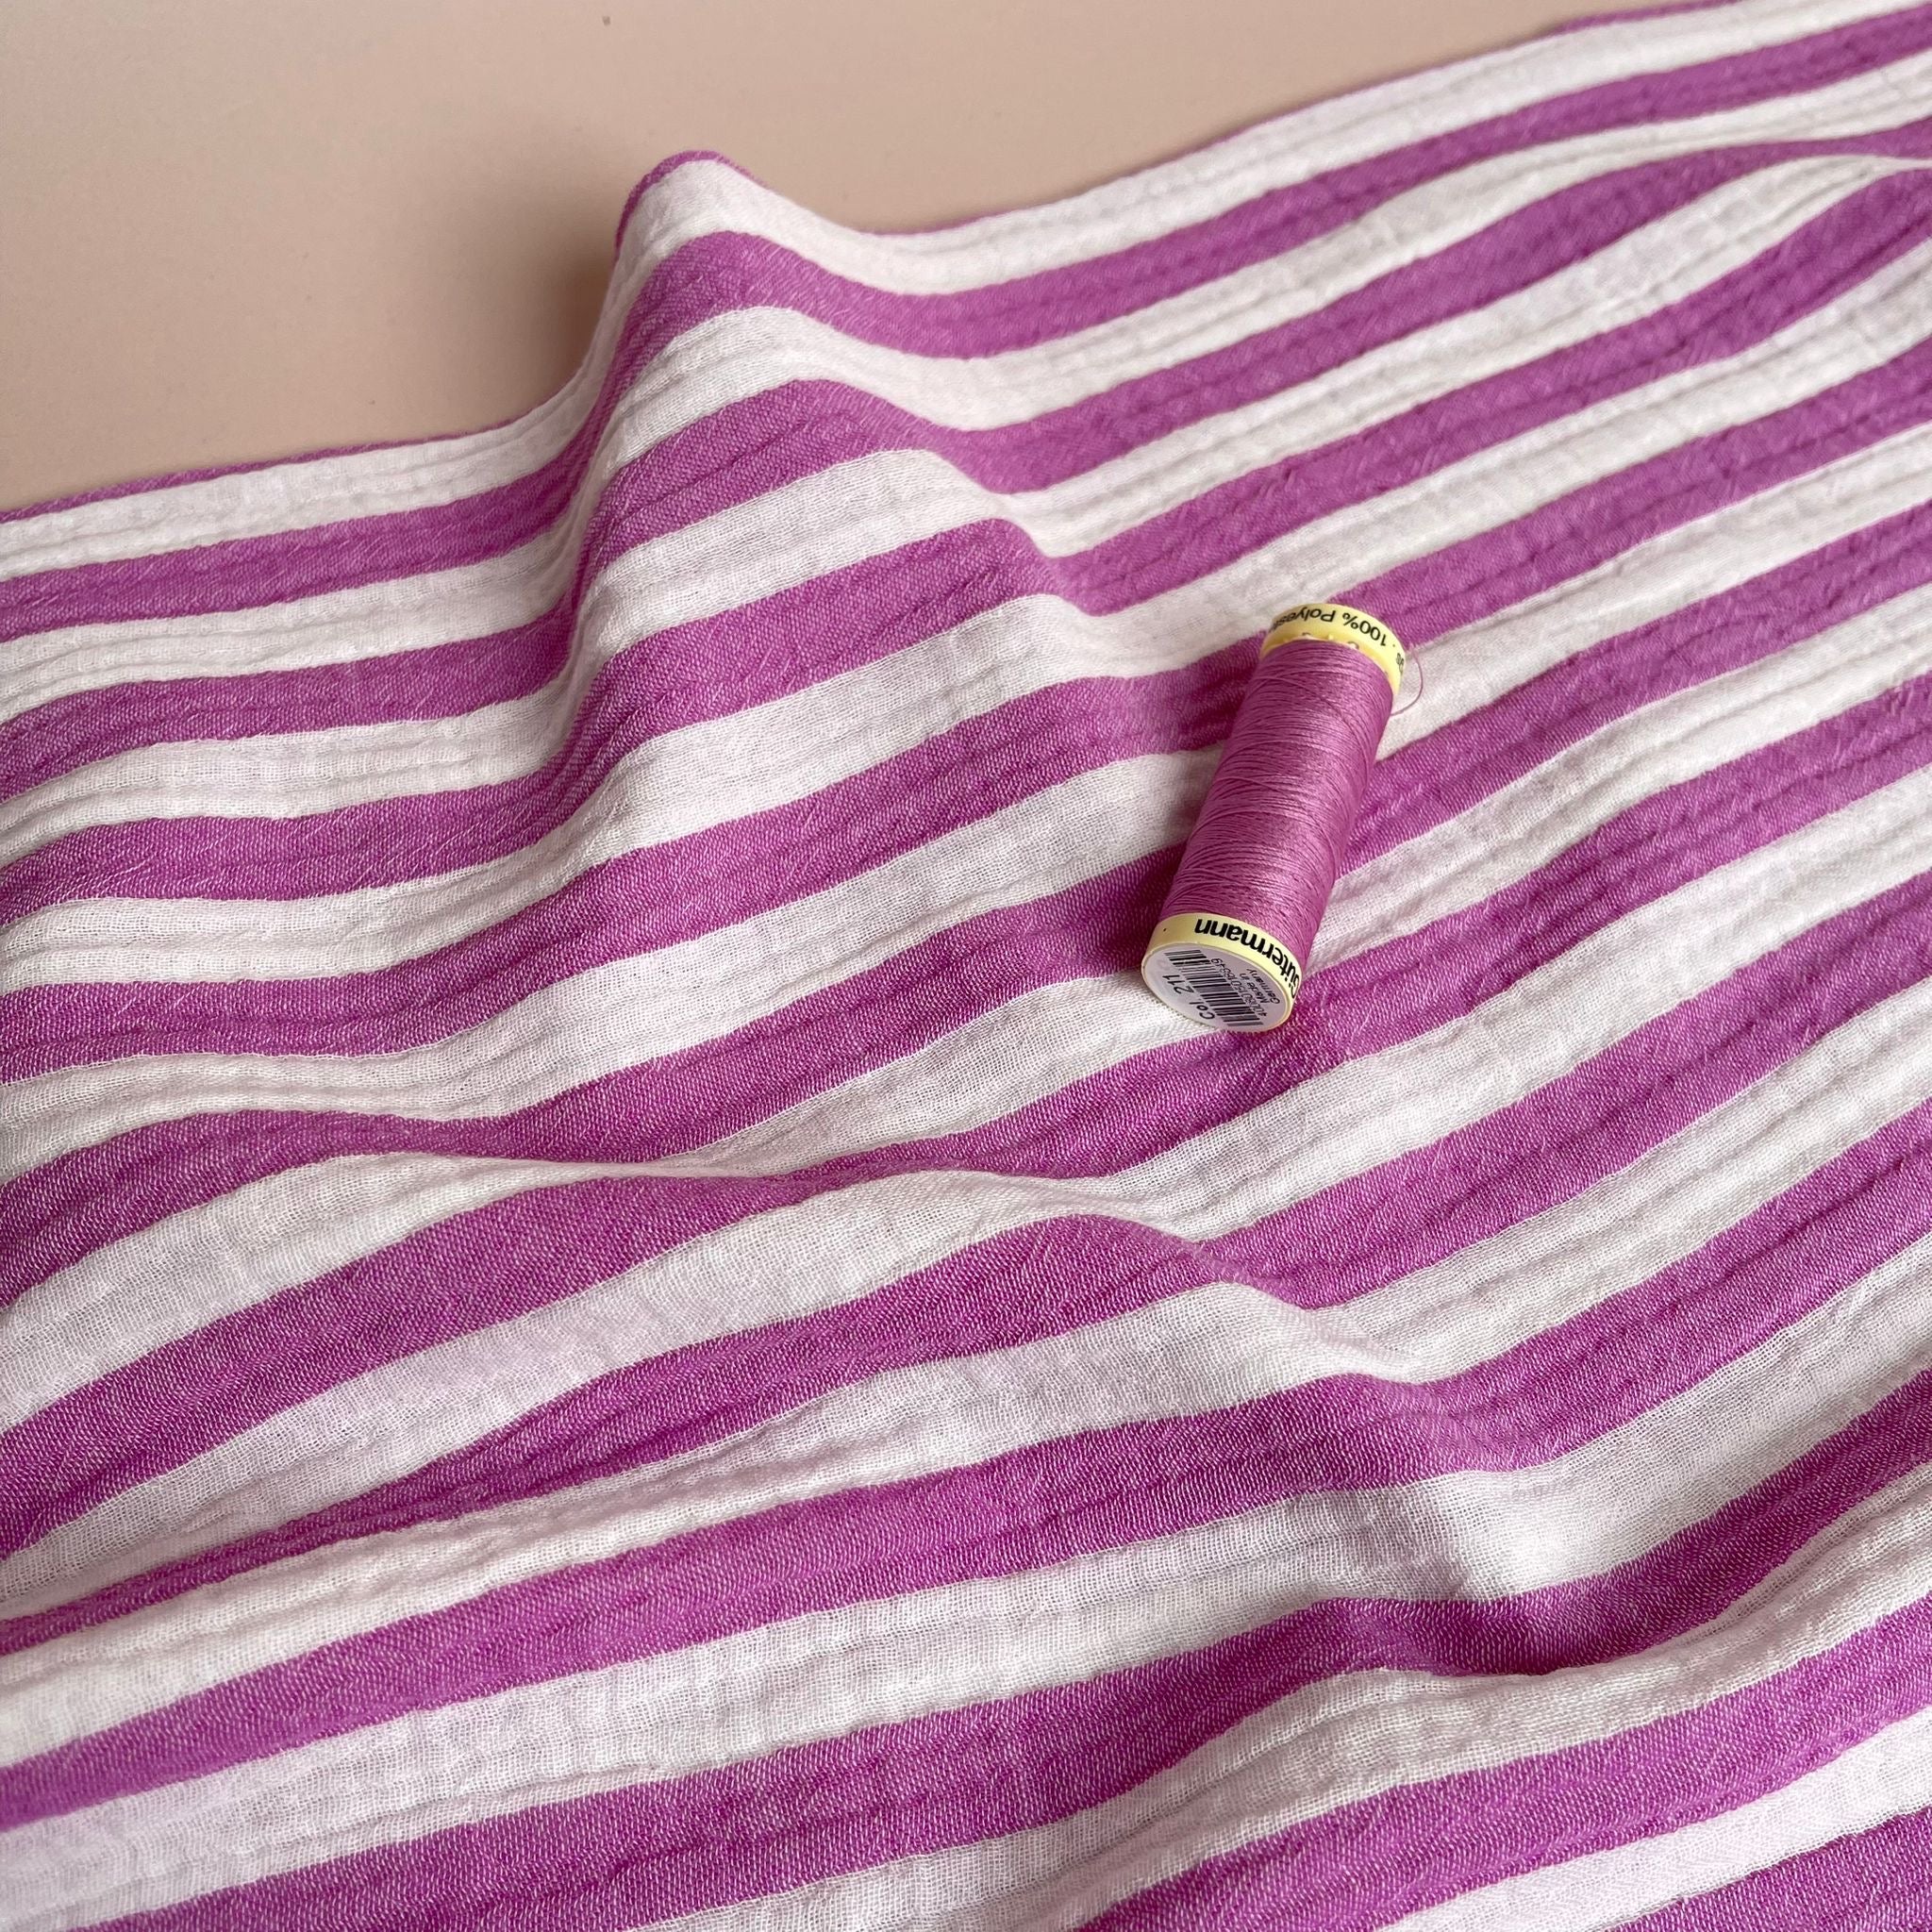 Yarn Dyed Stripe Cotton Double Gauze in Cyclamen Pink